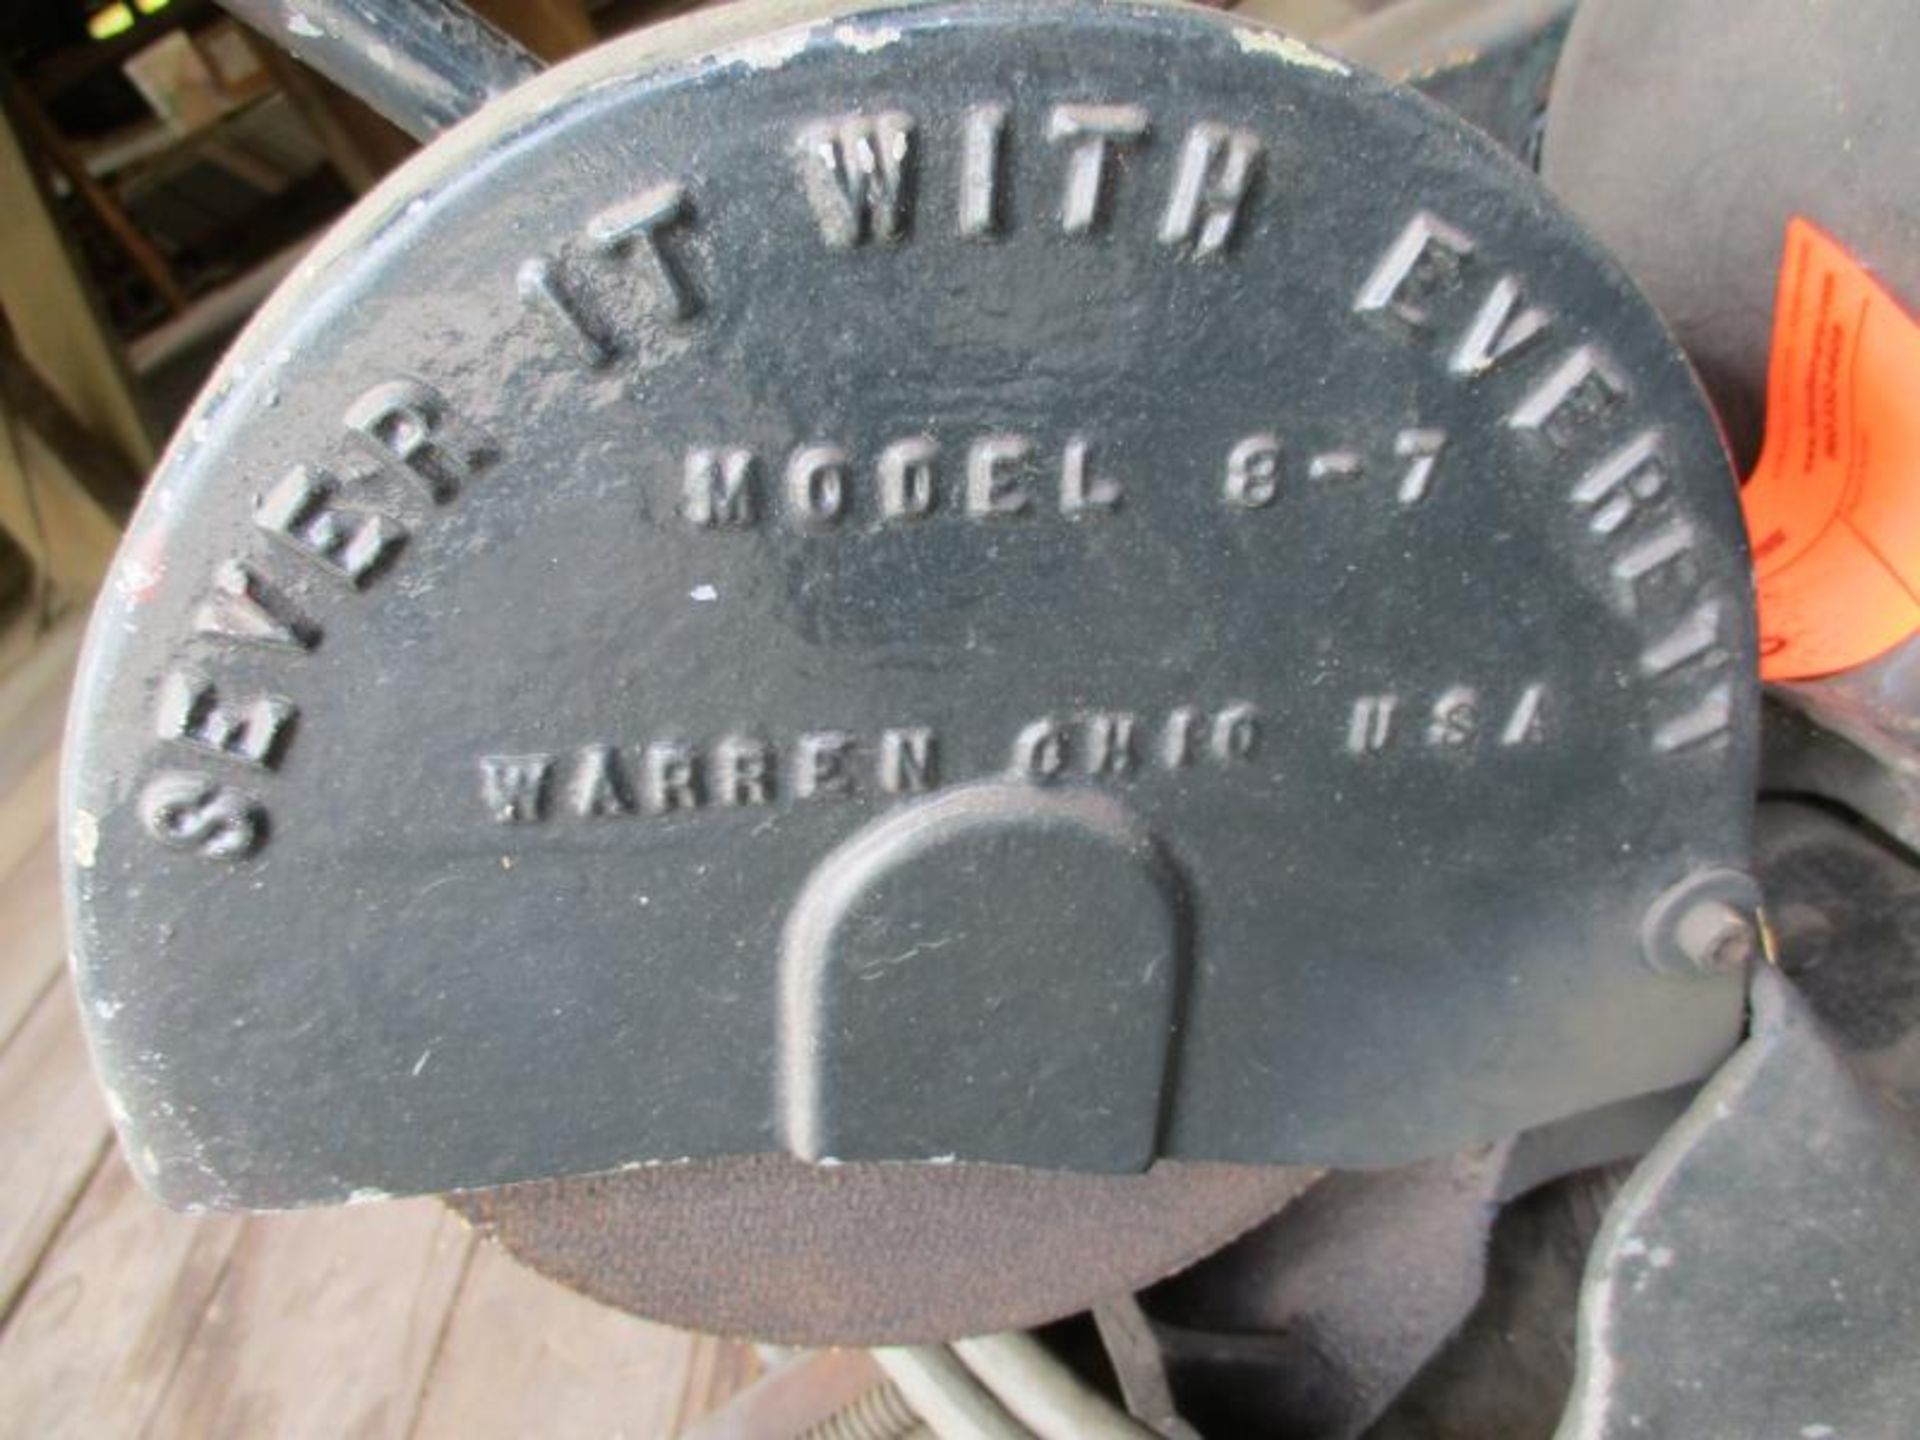 Metal Cutting Saw, 2 HP Motor, By Dayton - Image 2 of 7